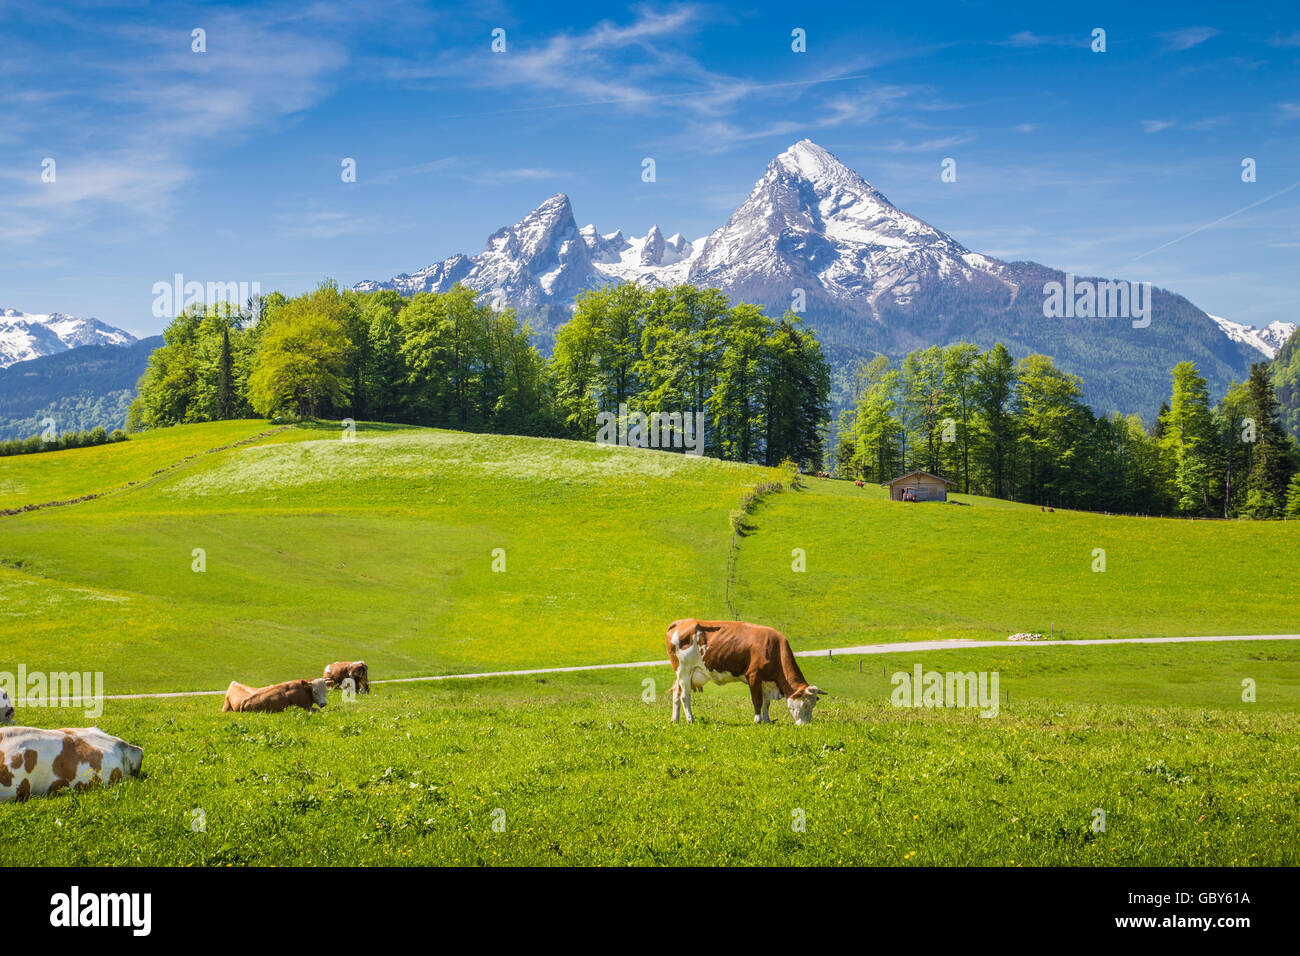 Paysage idyllique dans les Alpes avec des vaches qui paissent sur les pâturages de montagne verte fraîche avec snowcapped mountain top dans l'arrière-plan Banque D'Images